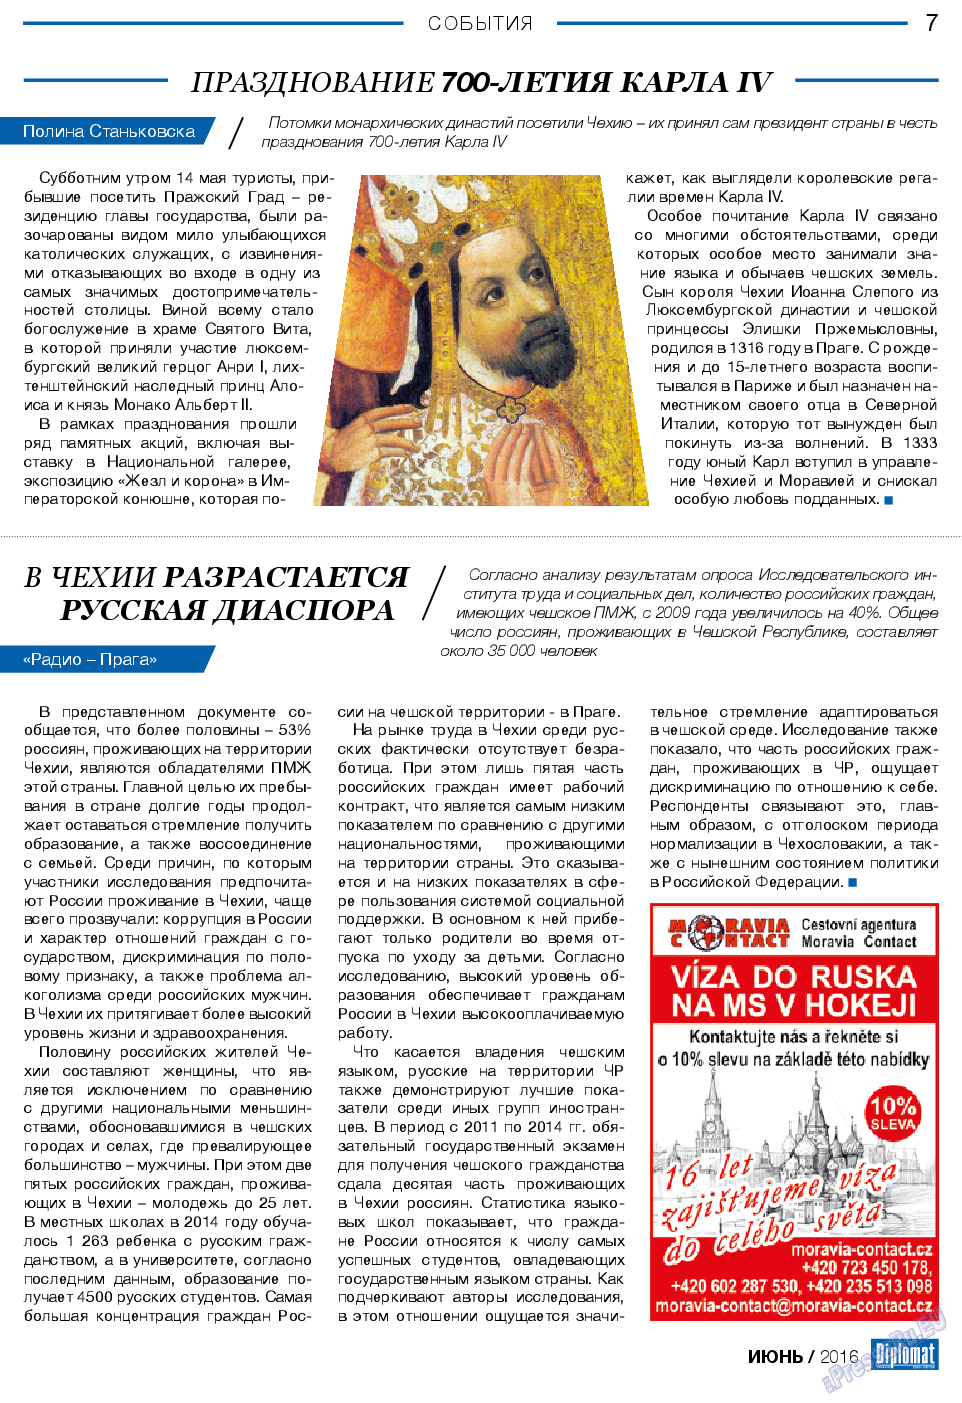 Diplomat (газета). 2016 год, номер 81, стр. 7